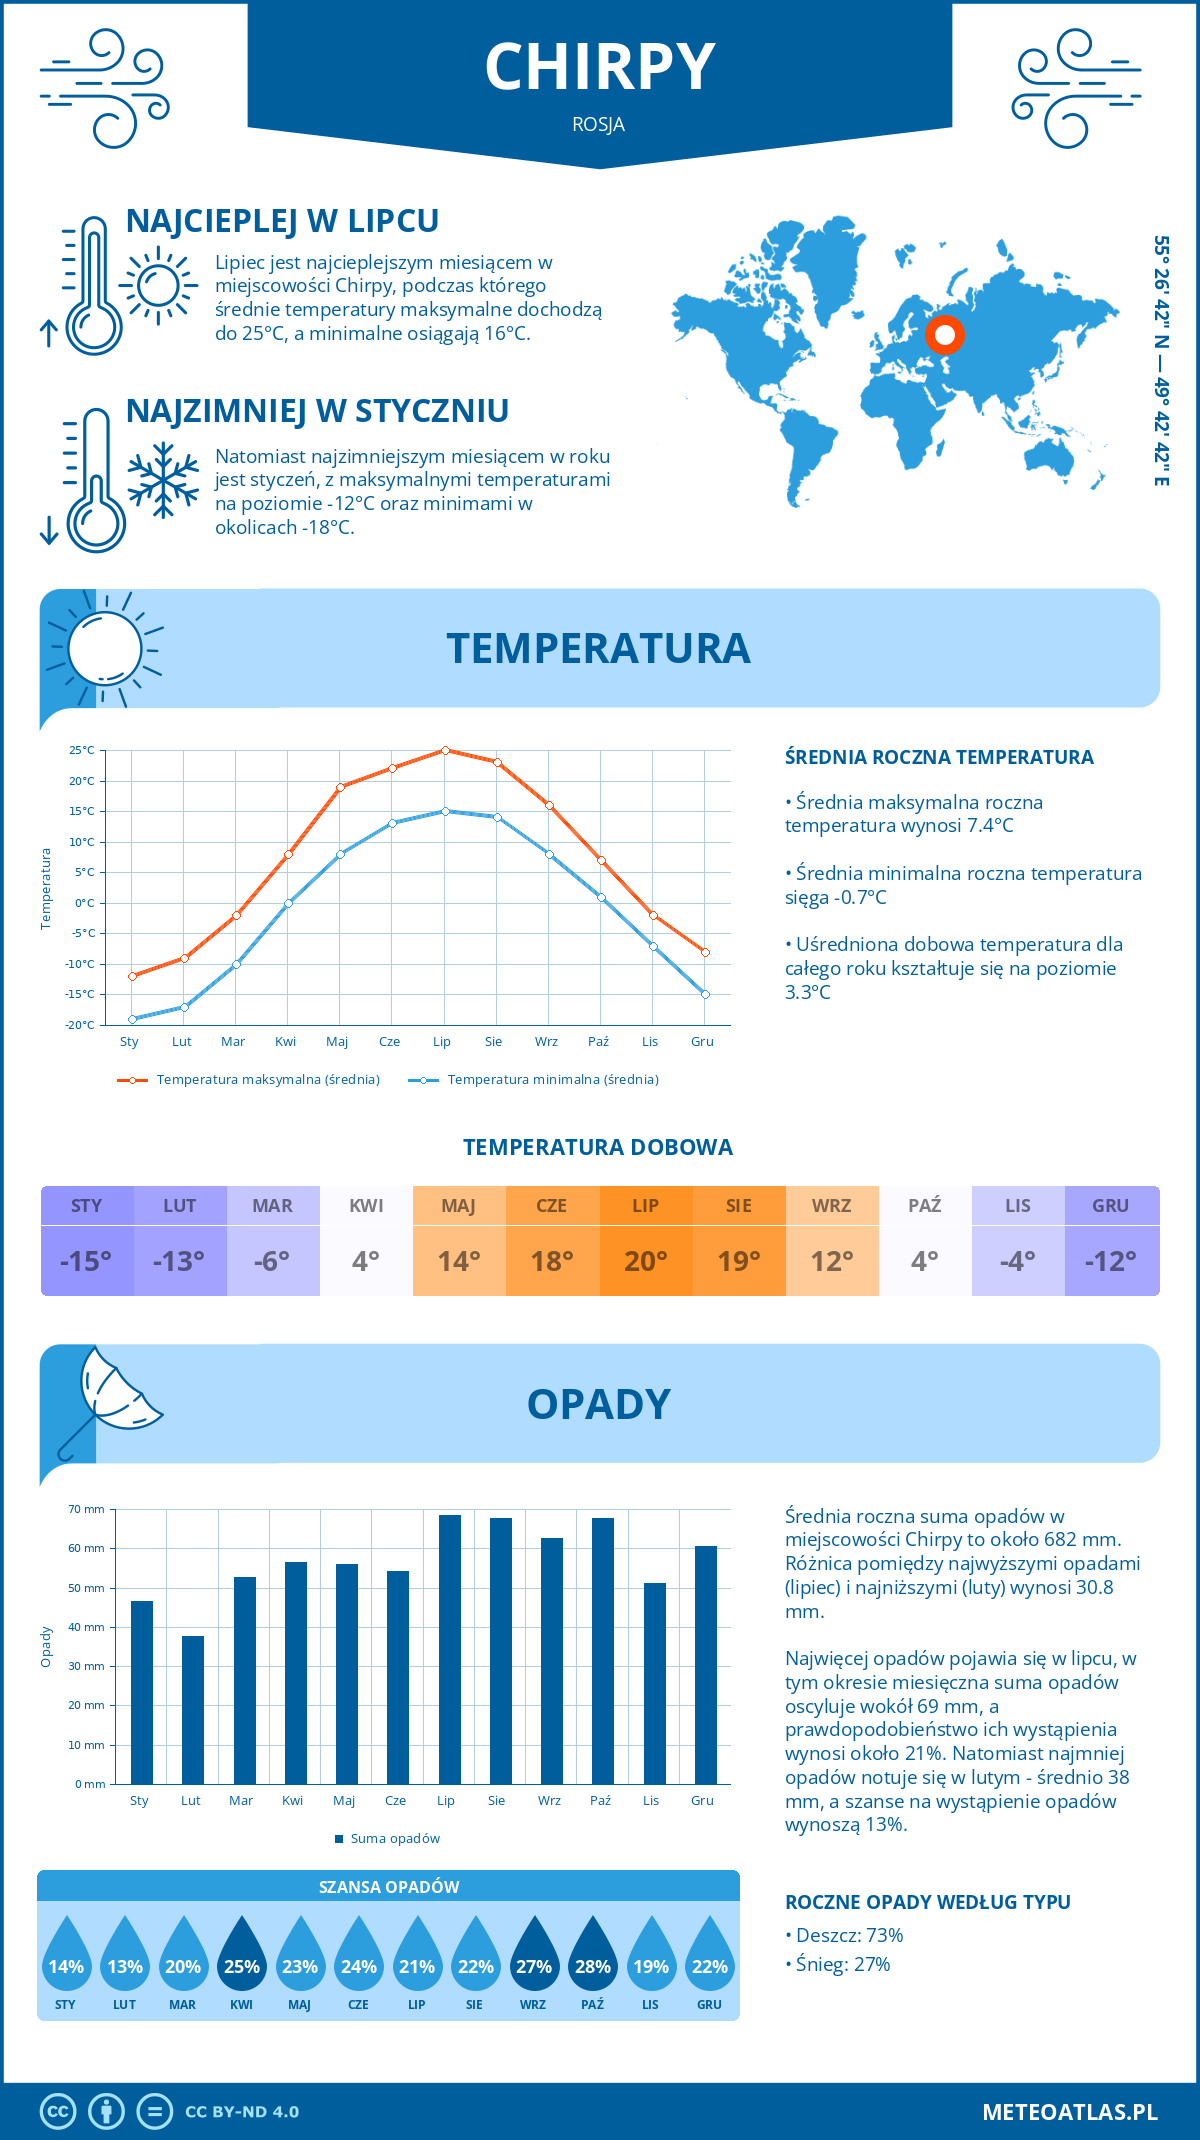 Pogoda Chirpy (Rosja). Temperatura oraz opady.